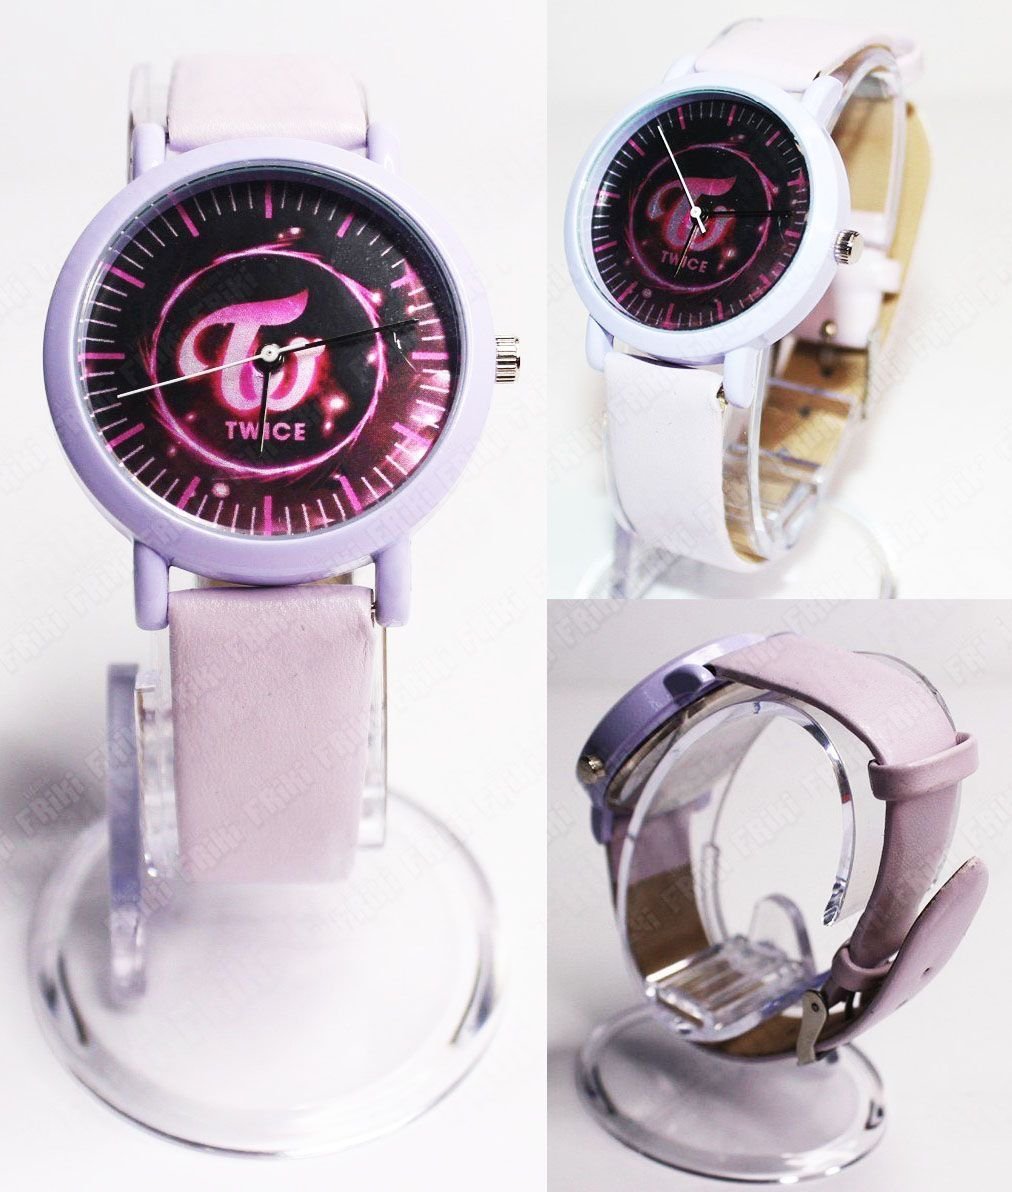 Reloj de pulsera Música Kpop Twice Ecuador Comprar Venden, Bonita Apariencia ideal para los fans, practica, Hermoso material de acero inoxidable Color rosa Estado nuevo